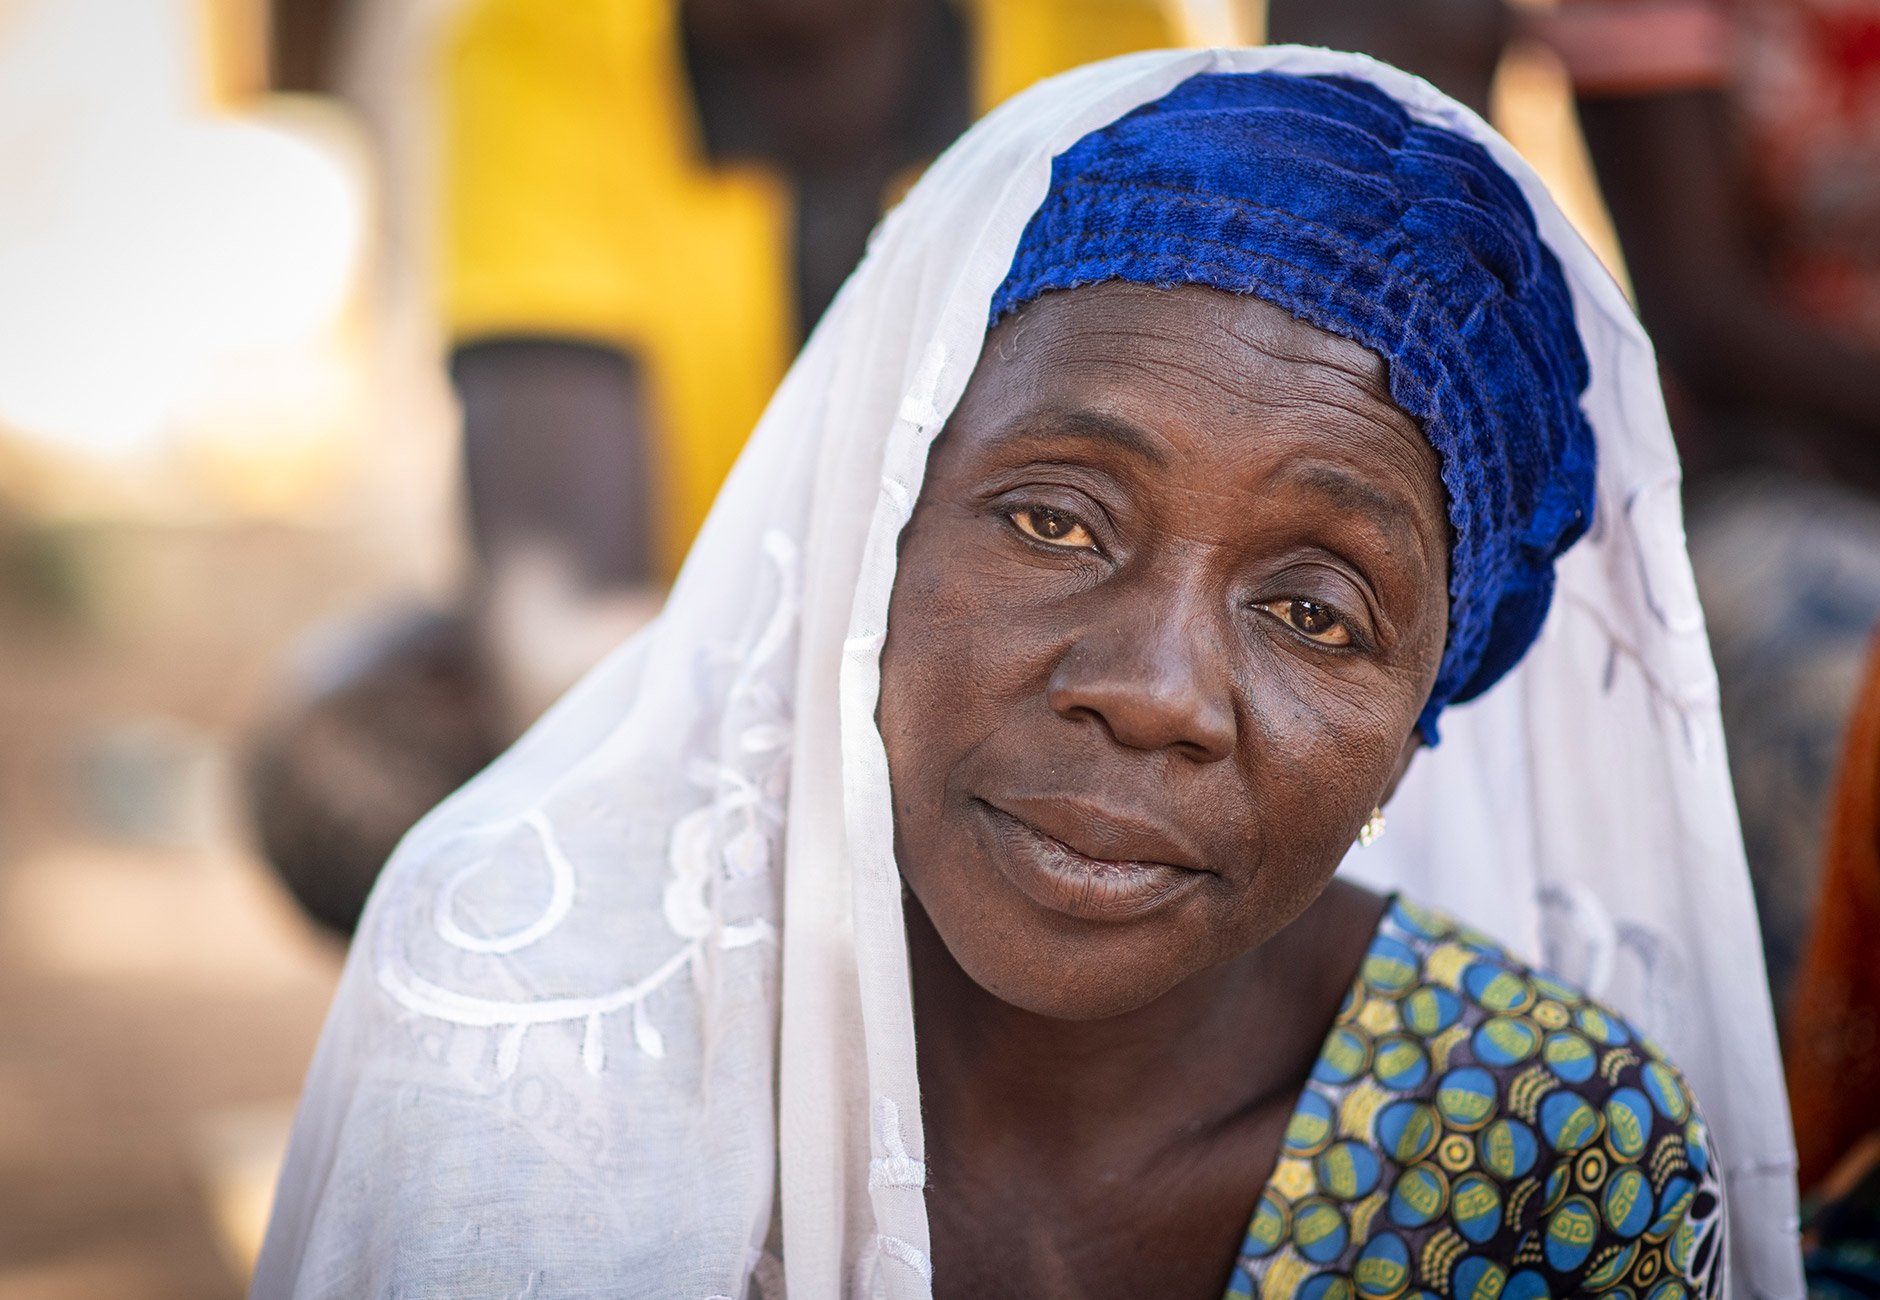 Zeinabou, 42 ans, photographiée dans la cour d’une maison appartenant à ses proches au Burkina Faso. Trois jours plus tôt, son mari a été tué sous ses yeux.